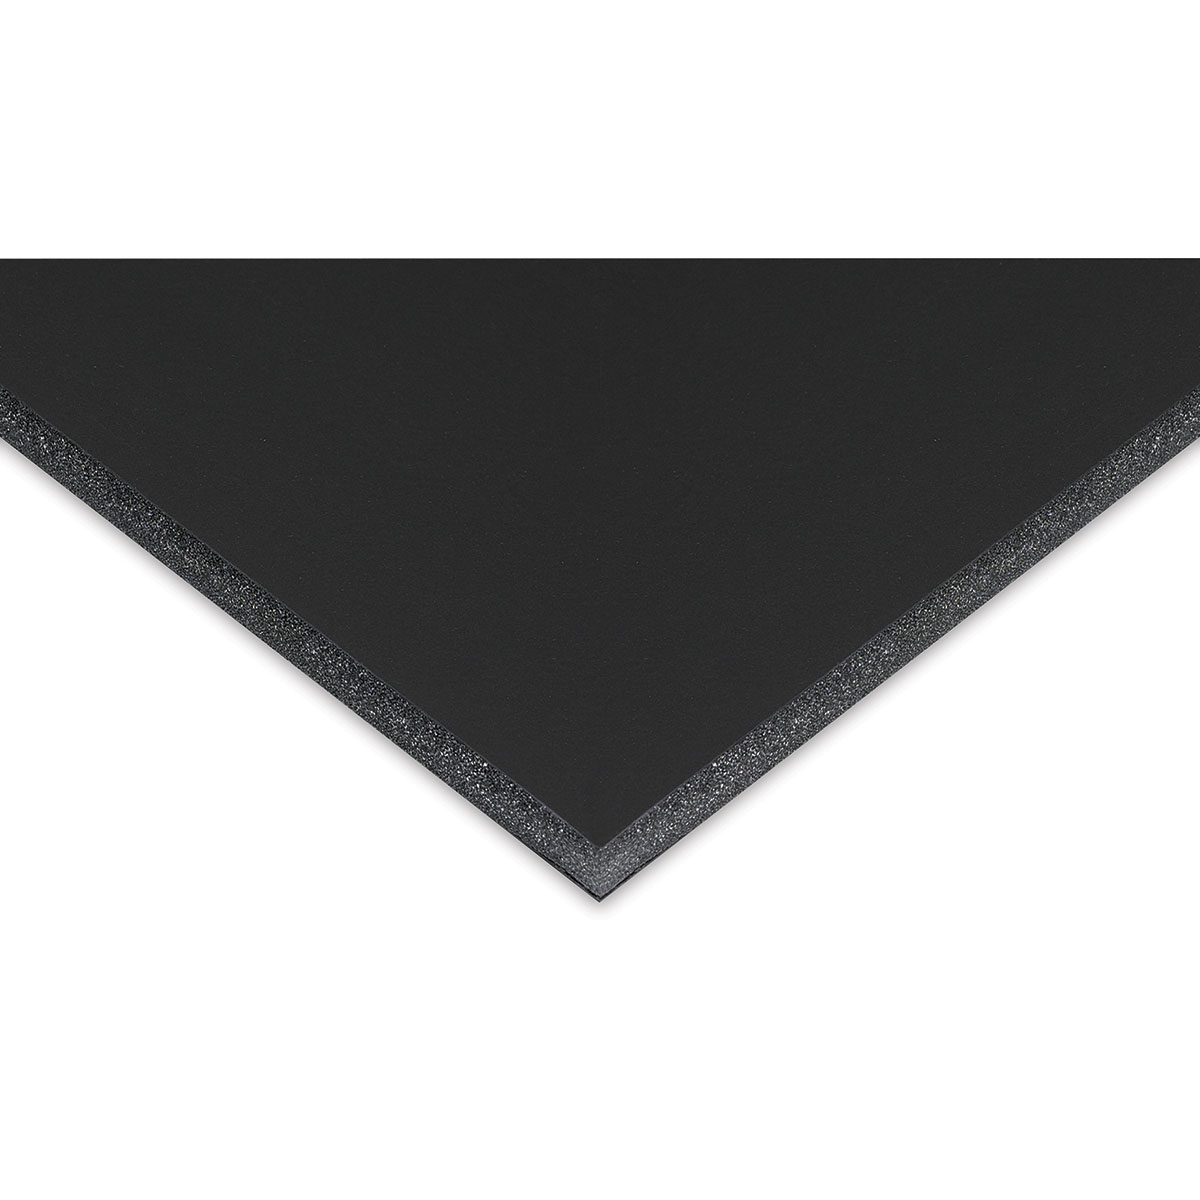 Alvin 90301 30 x 40 Bienfang Foam Board - Black